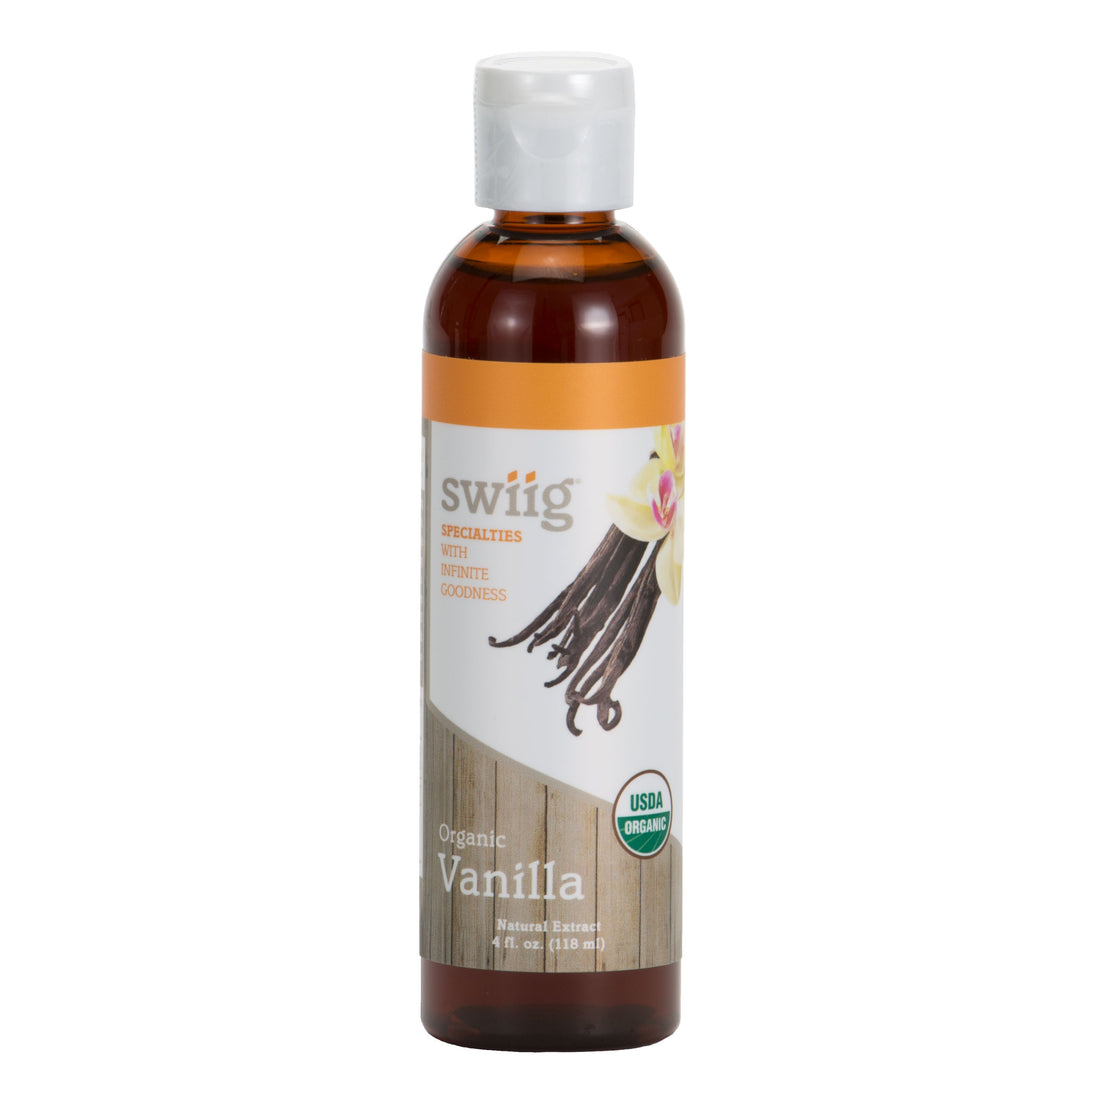 Organic Vanilla Extract - swiig